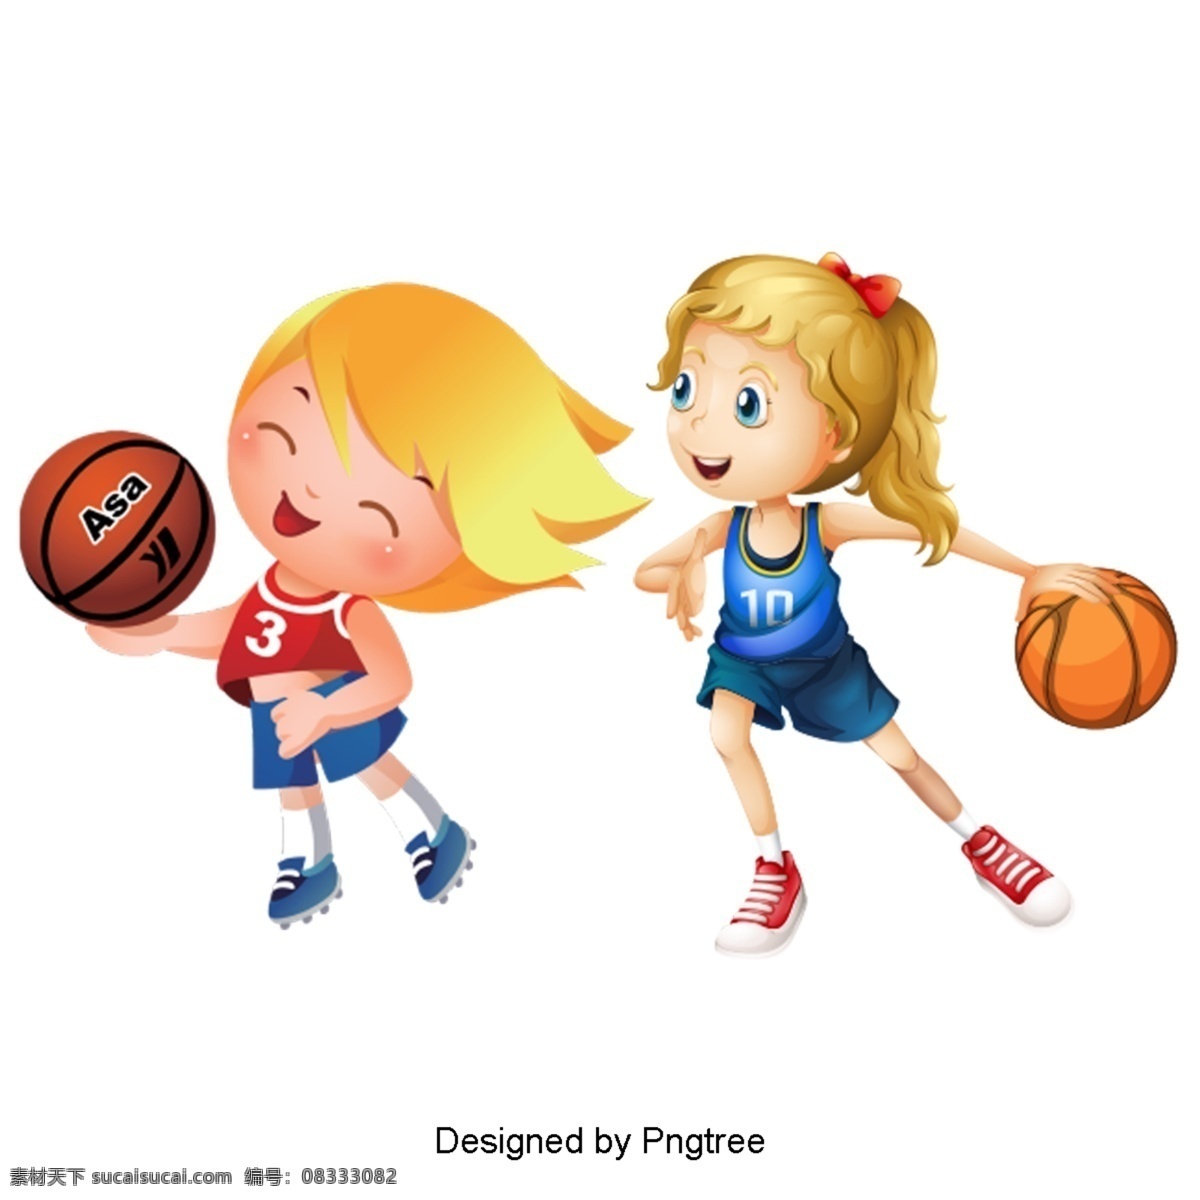 美丽 酷 卡通人 物体 育 活动 玩法 漂亮 卡通 可爱 手绘 女孩 运动 篮球 笑脸